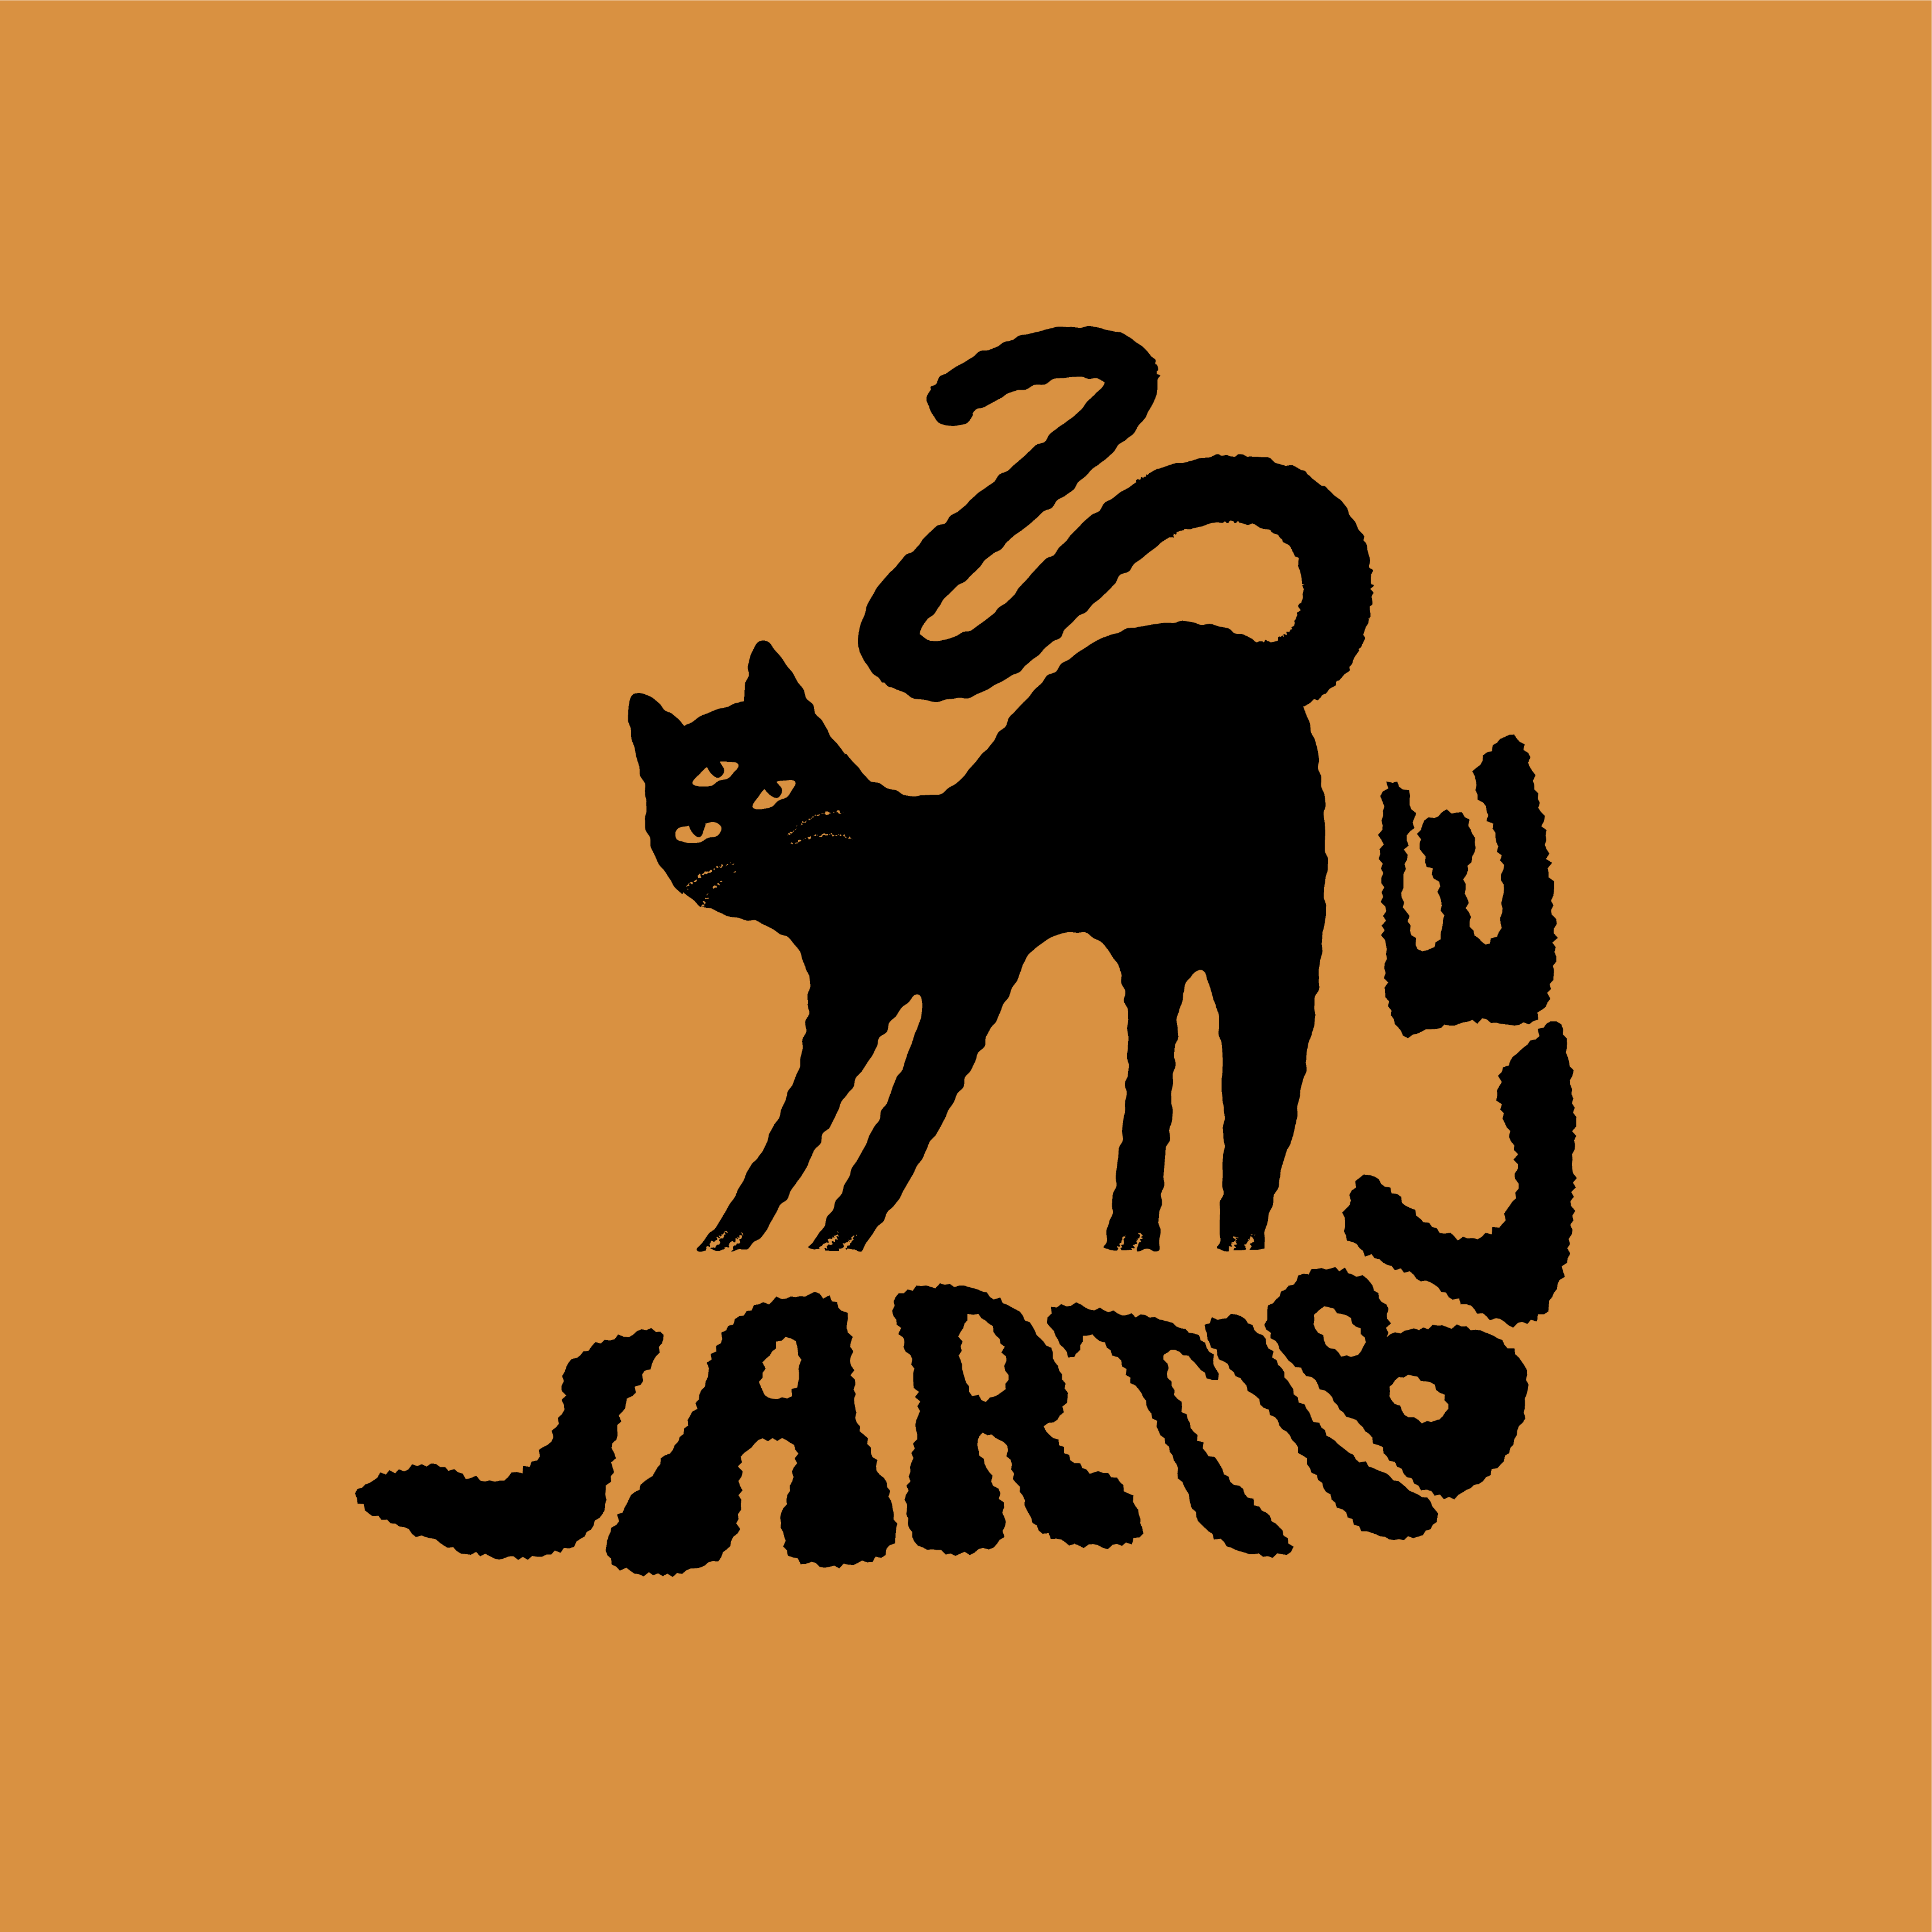 Diseño de gato negro con 3 ojos de la marca Jartible.